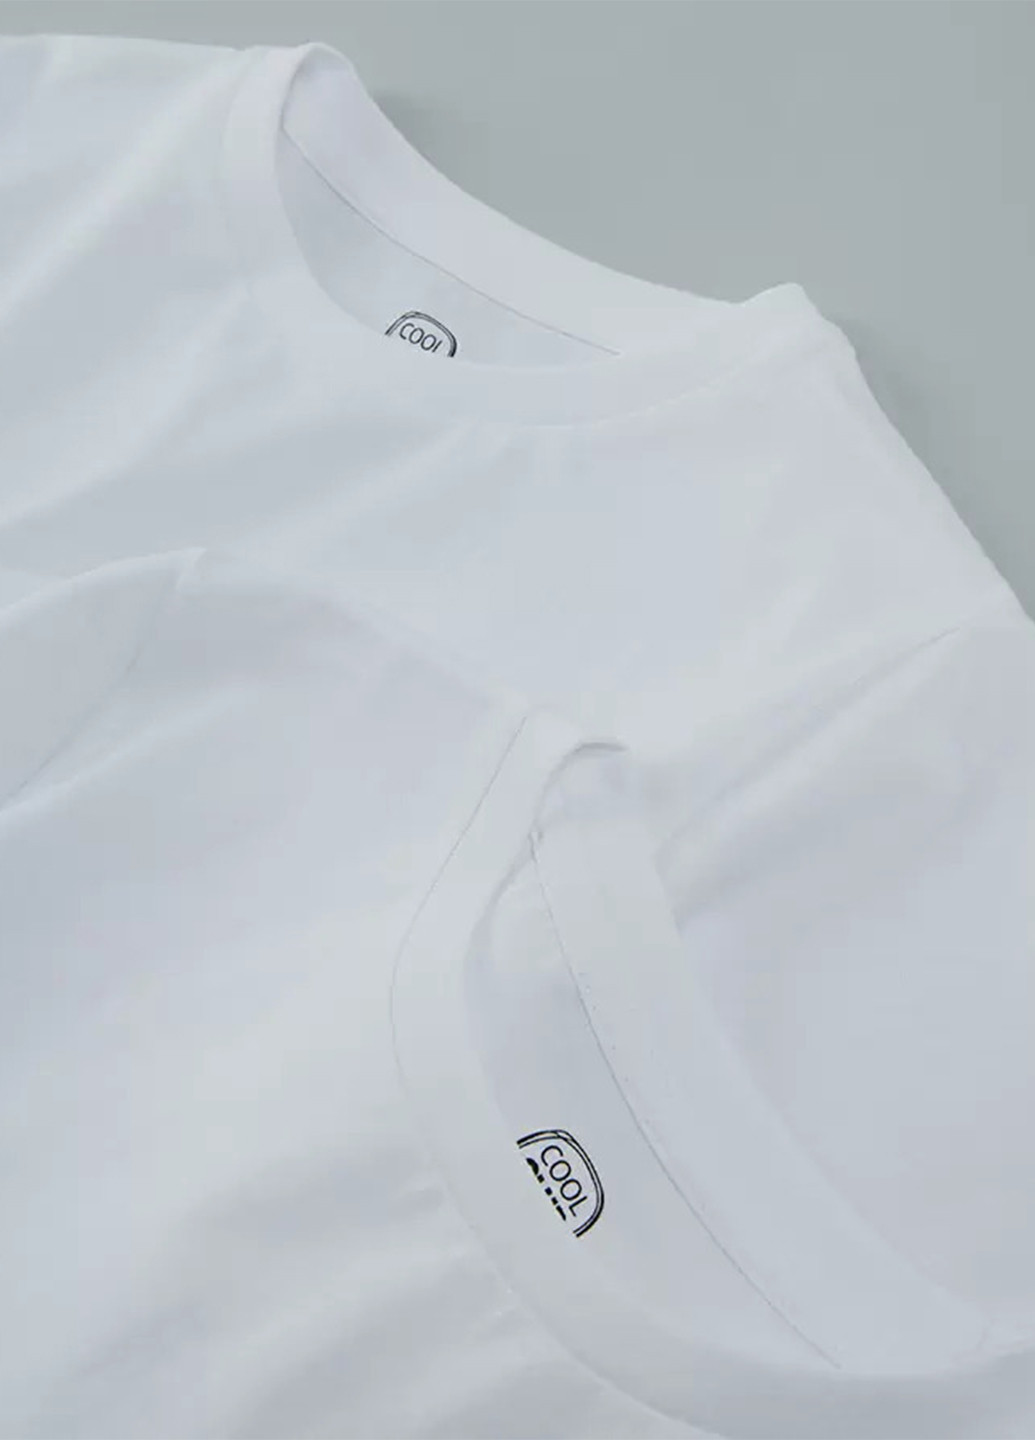 Біла літня футболка (2 шт.) Cool Club